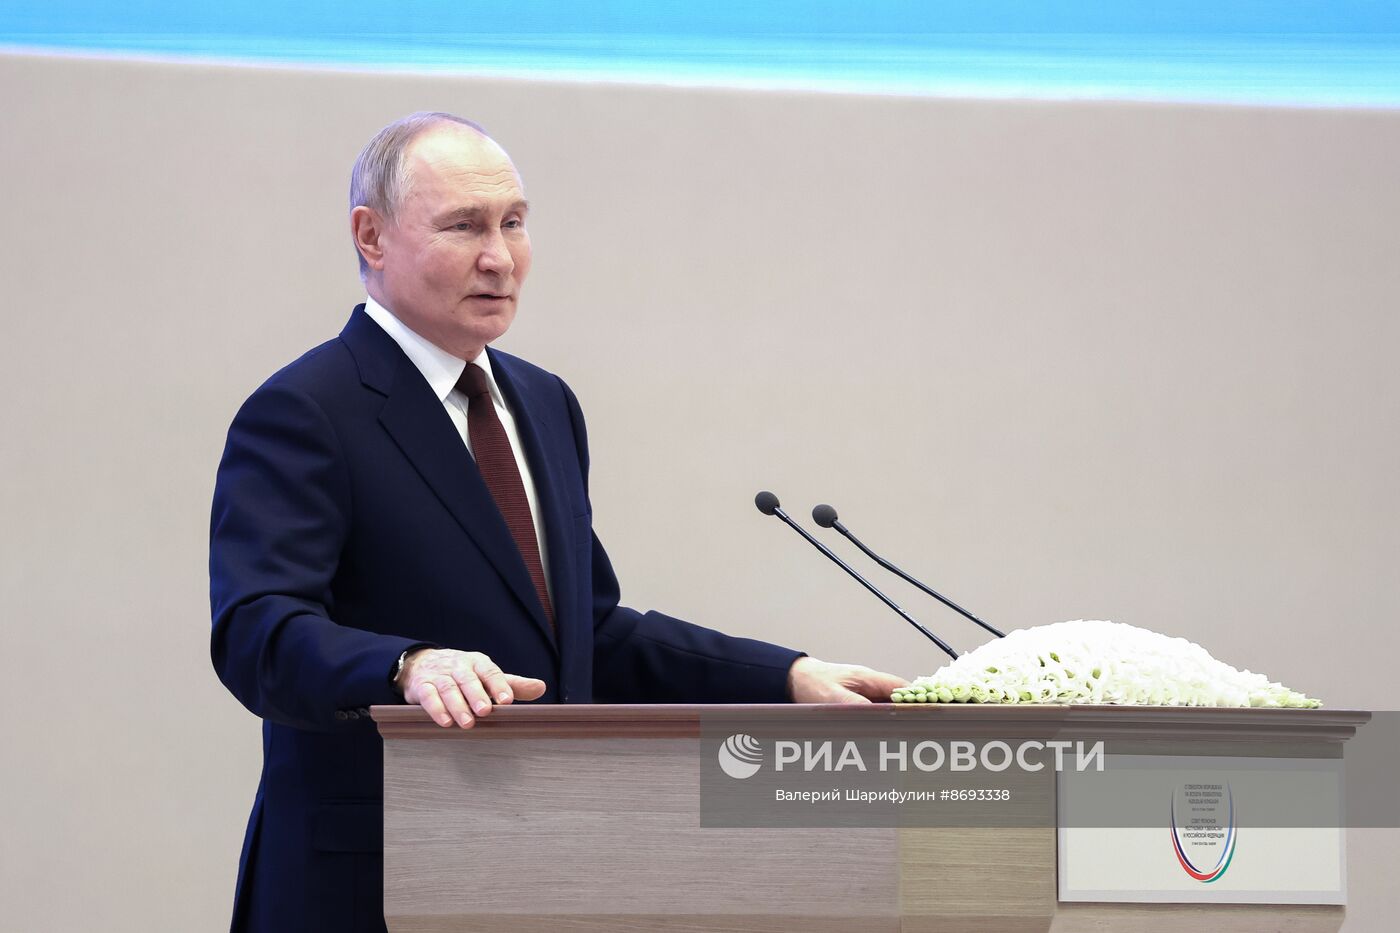 Рабочий визит президента Владимира Путина в Узбекистан. День второй